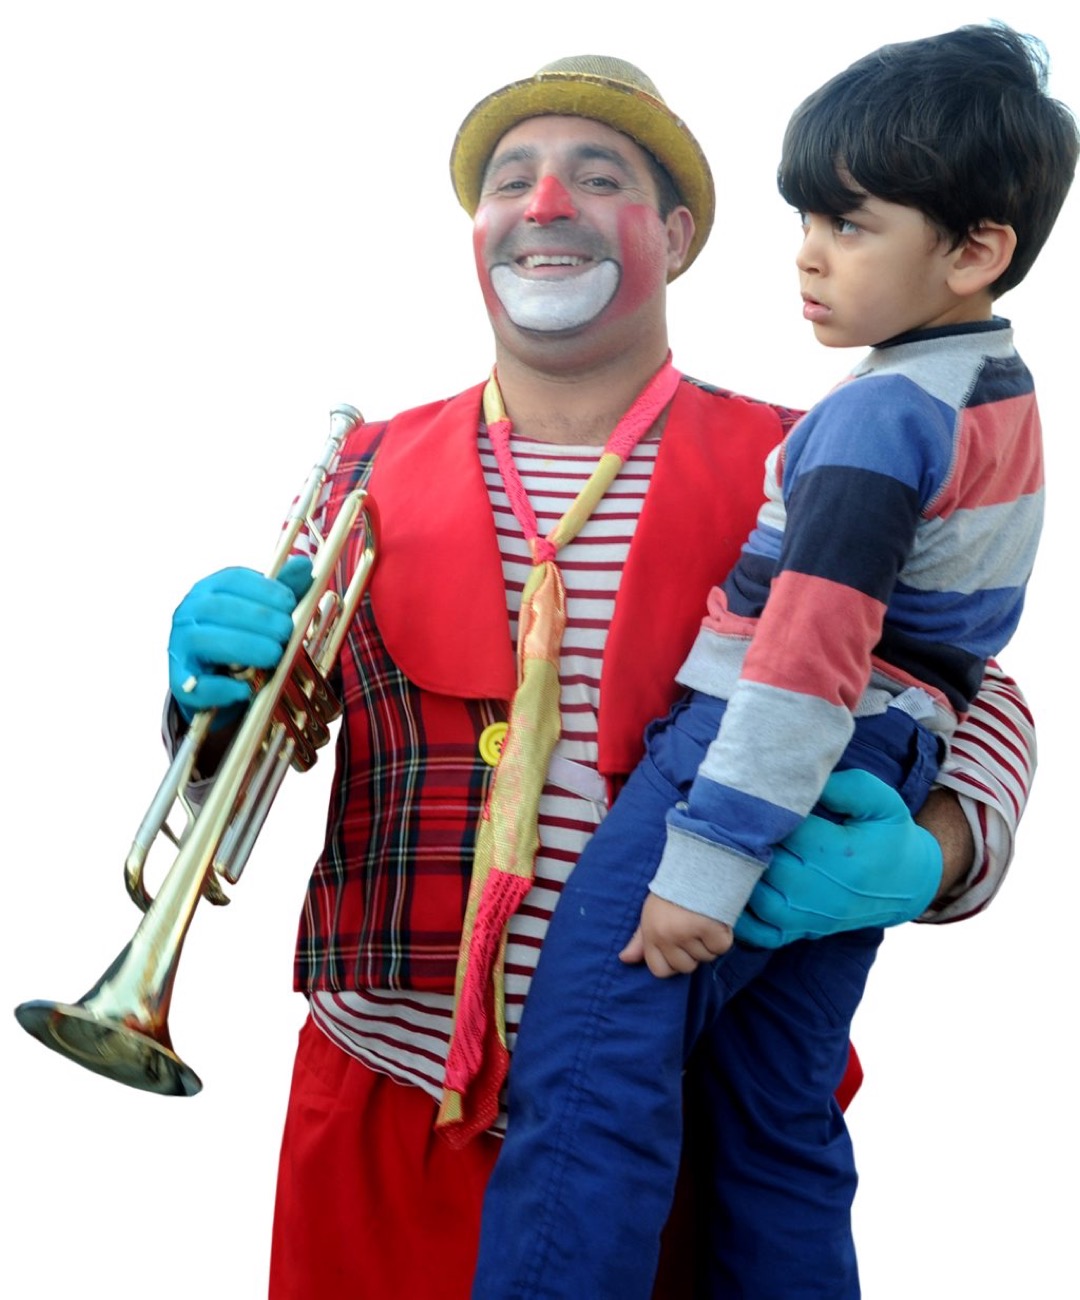 2018 07 20 170918 ill3 Clown Trompette et enfant